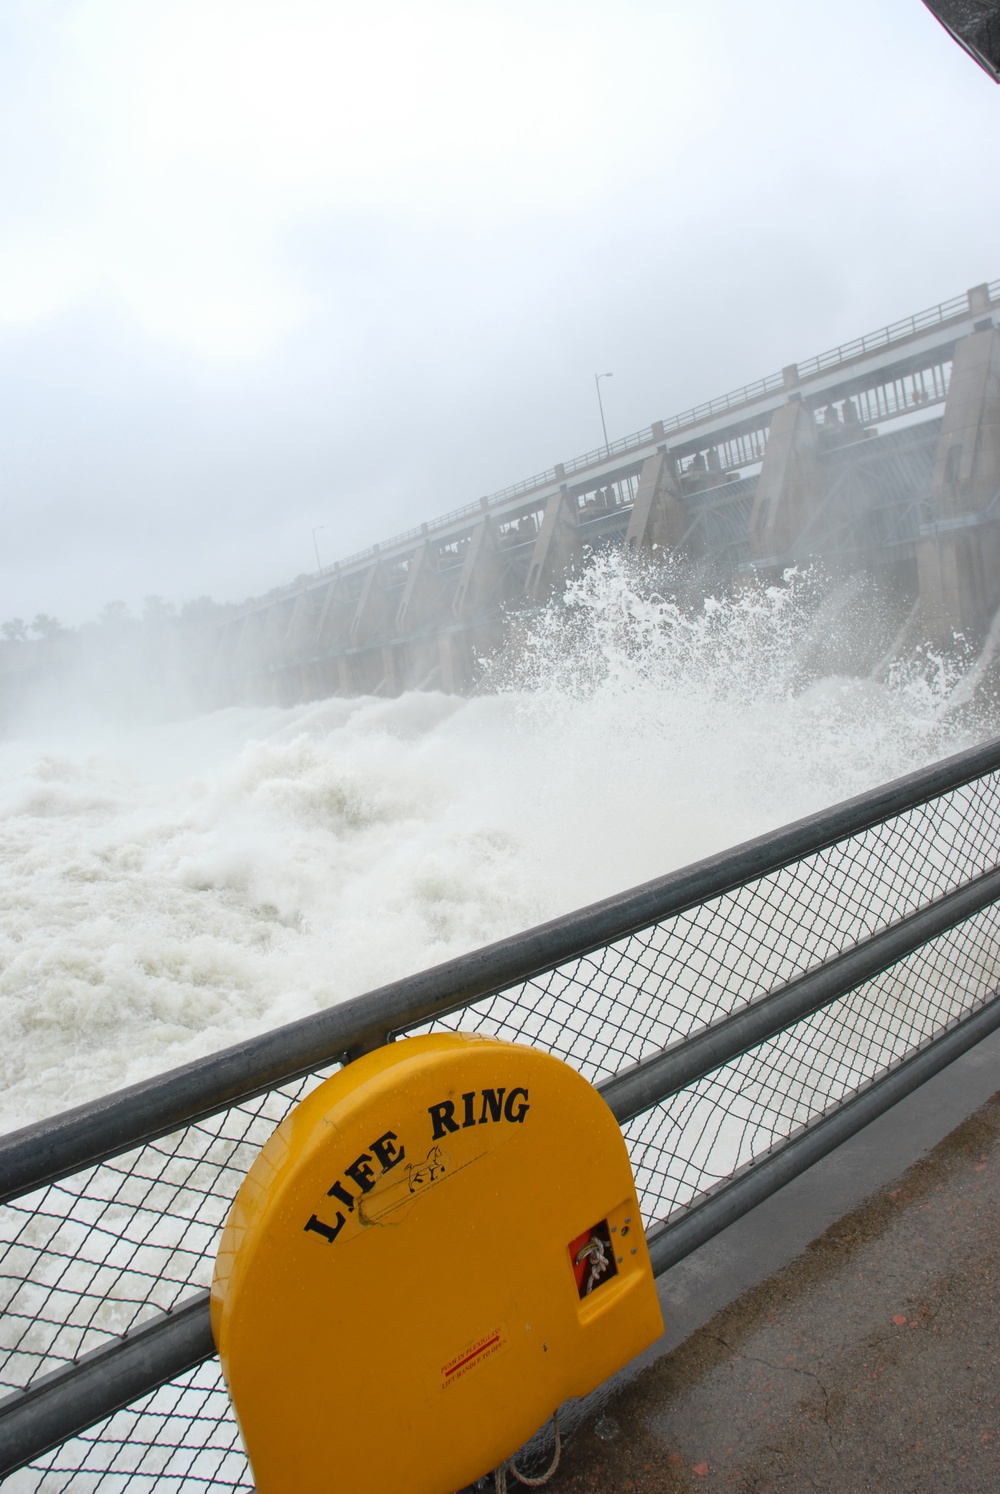 Gavins Point dam sustains 150,000 CFS